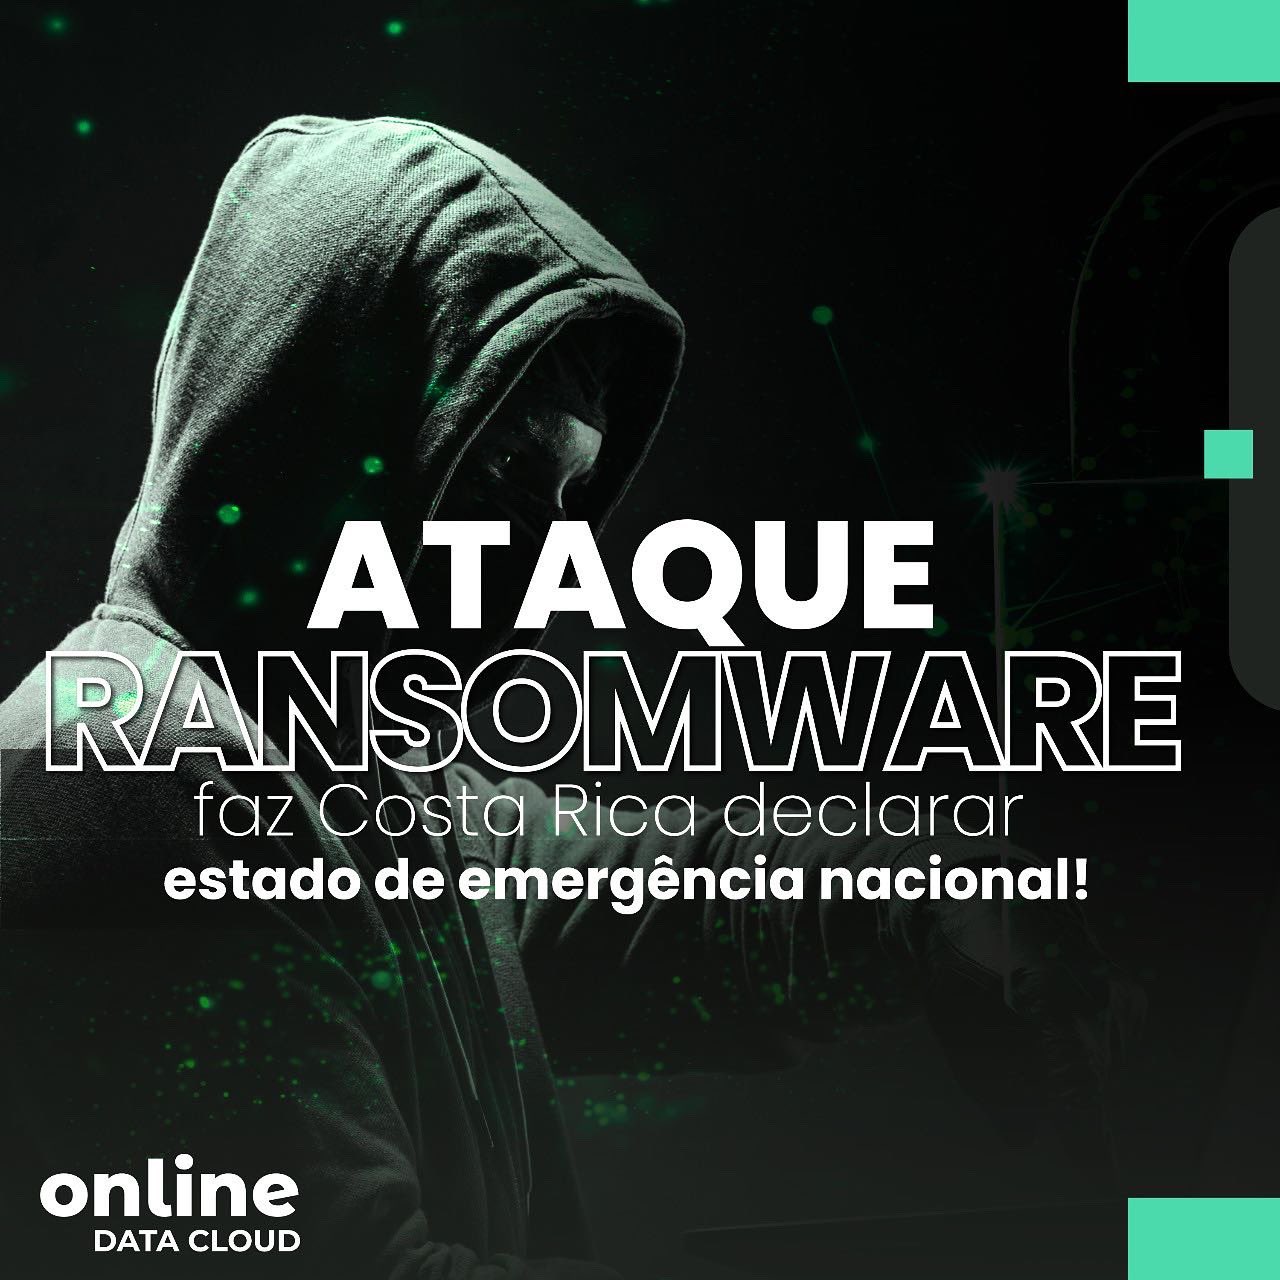 Ataque Ransomware: mais uma cidade em estado de emergência